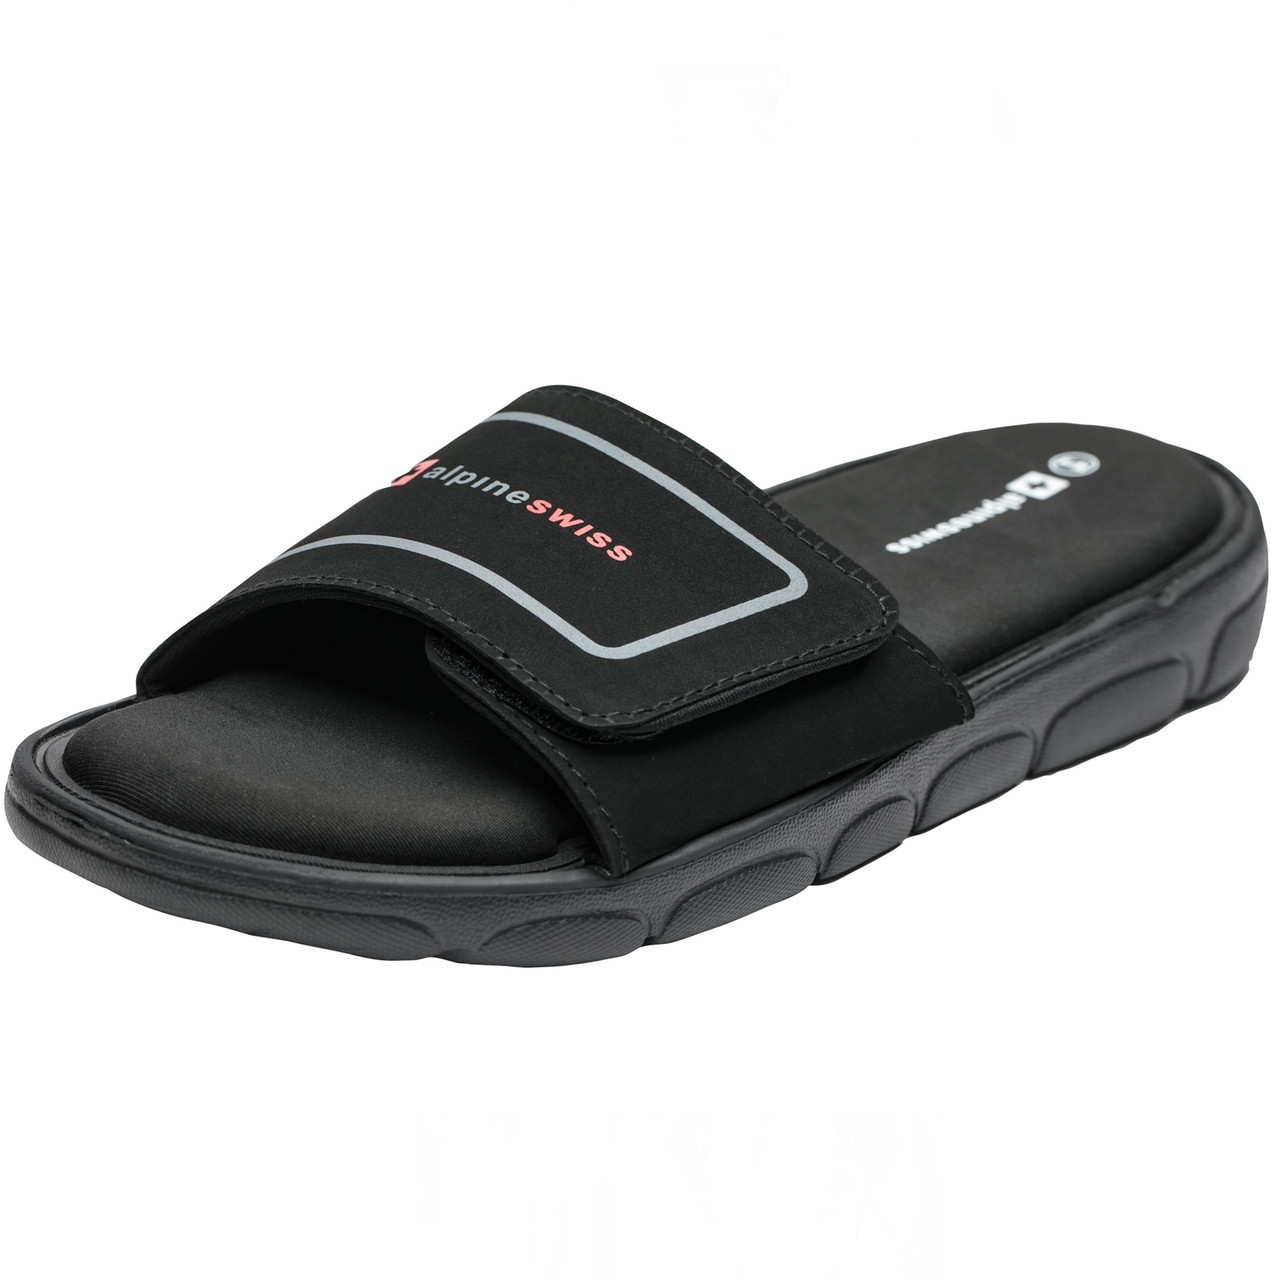 Wholesale Colorful dual use sandals flip flop men slippers men's